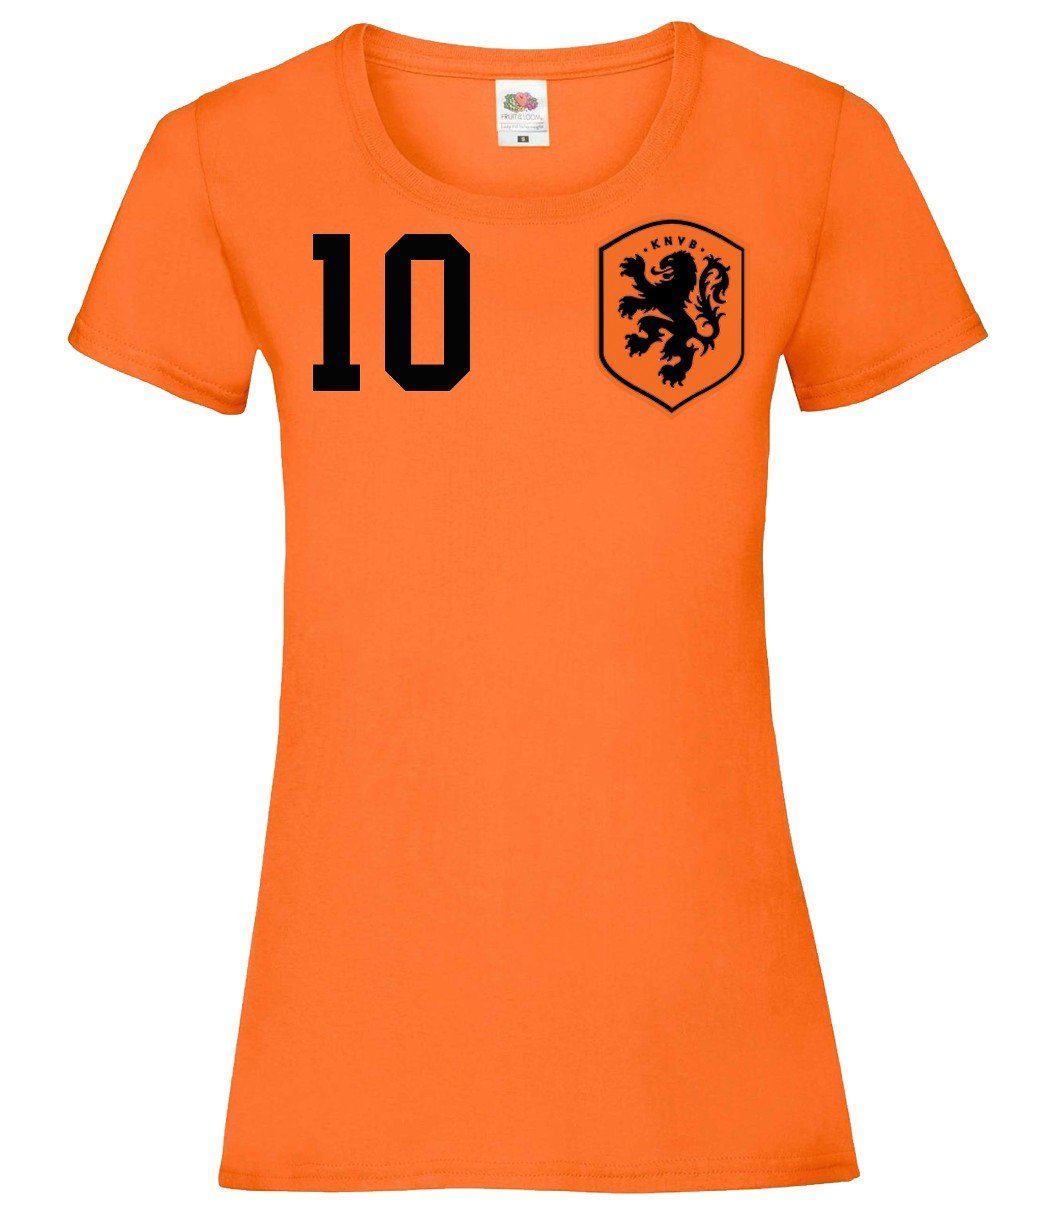 mit Youth T-Shirt Damen Niederlande trendigem T-Shirt Designz Motiv